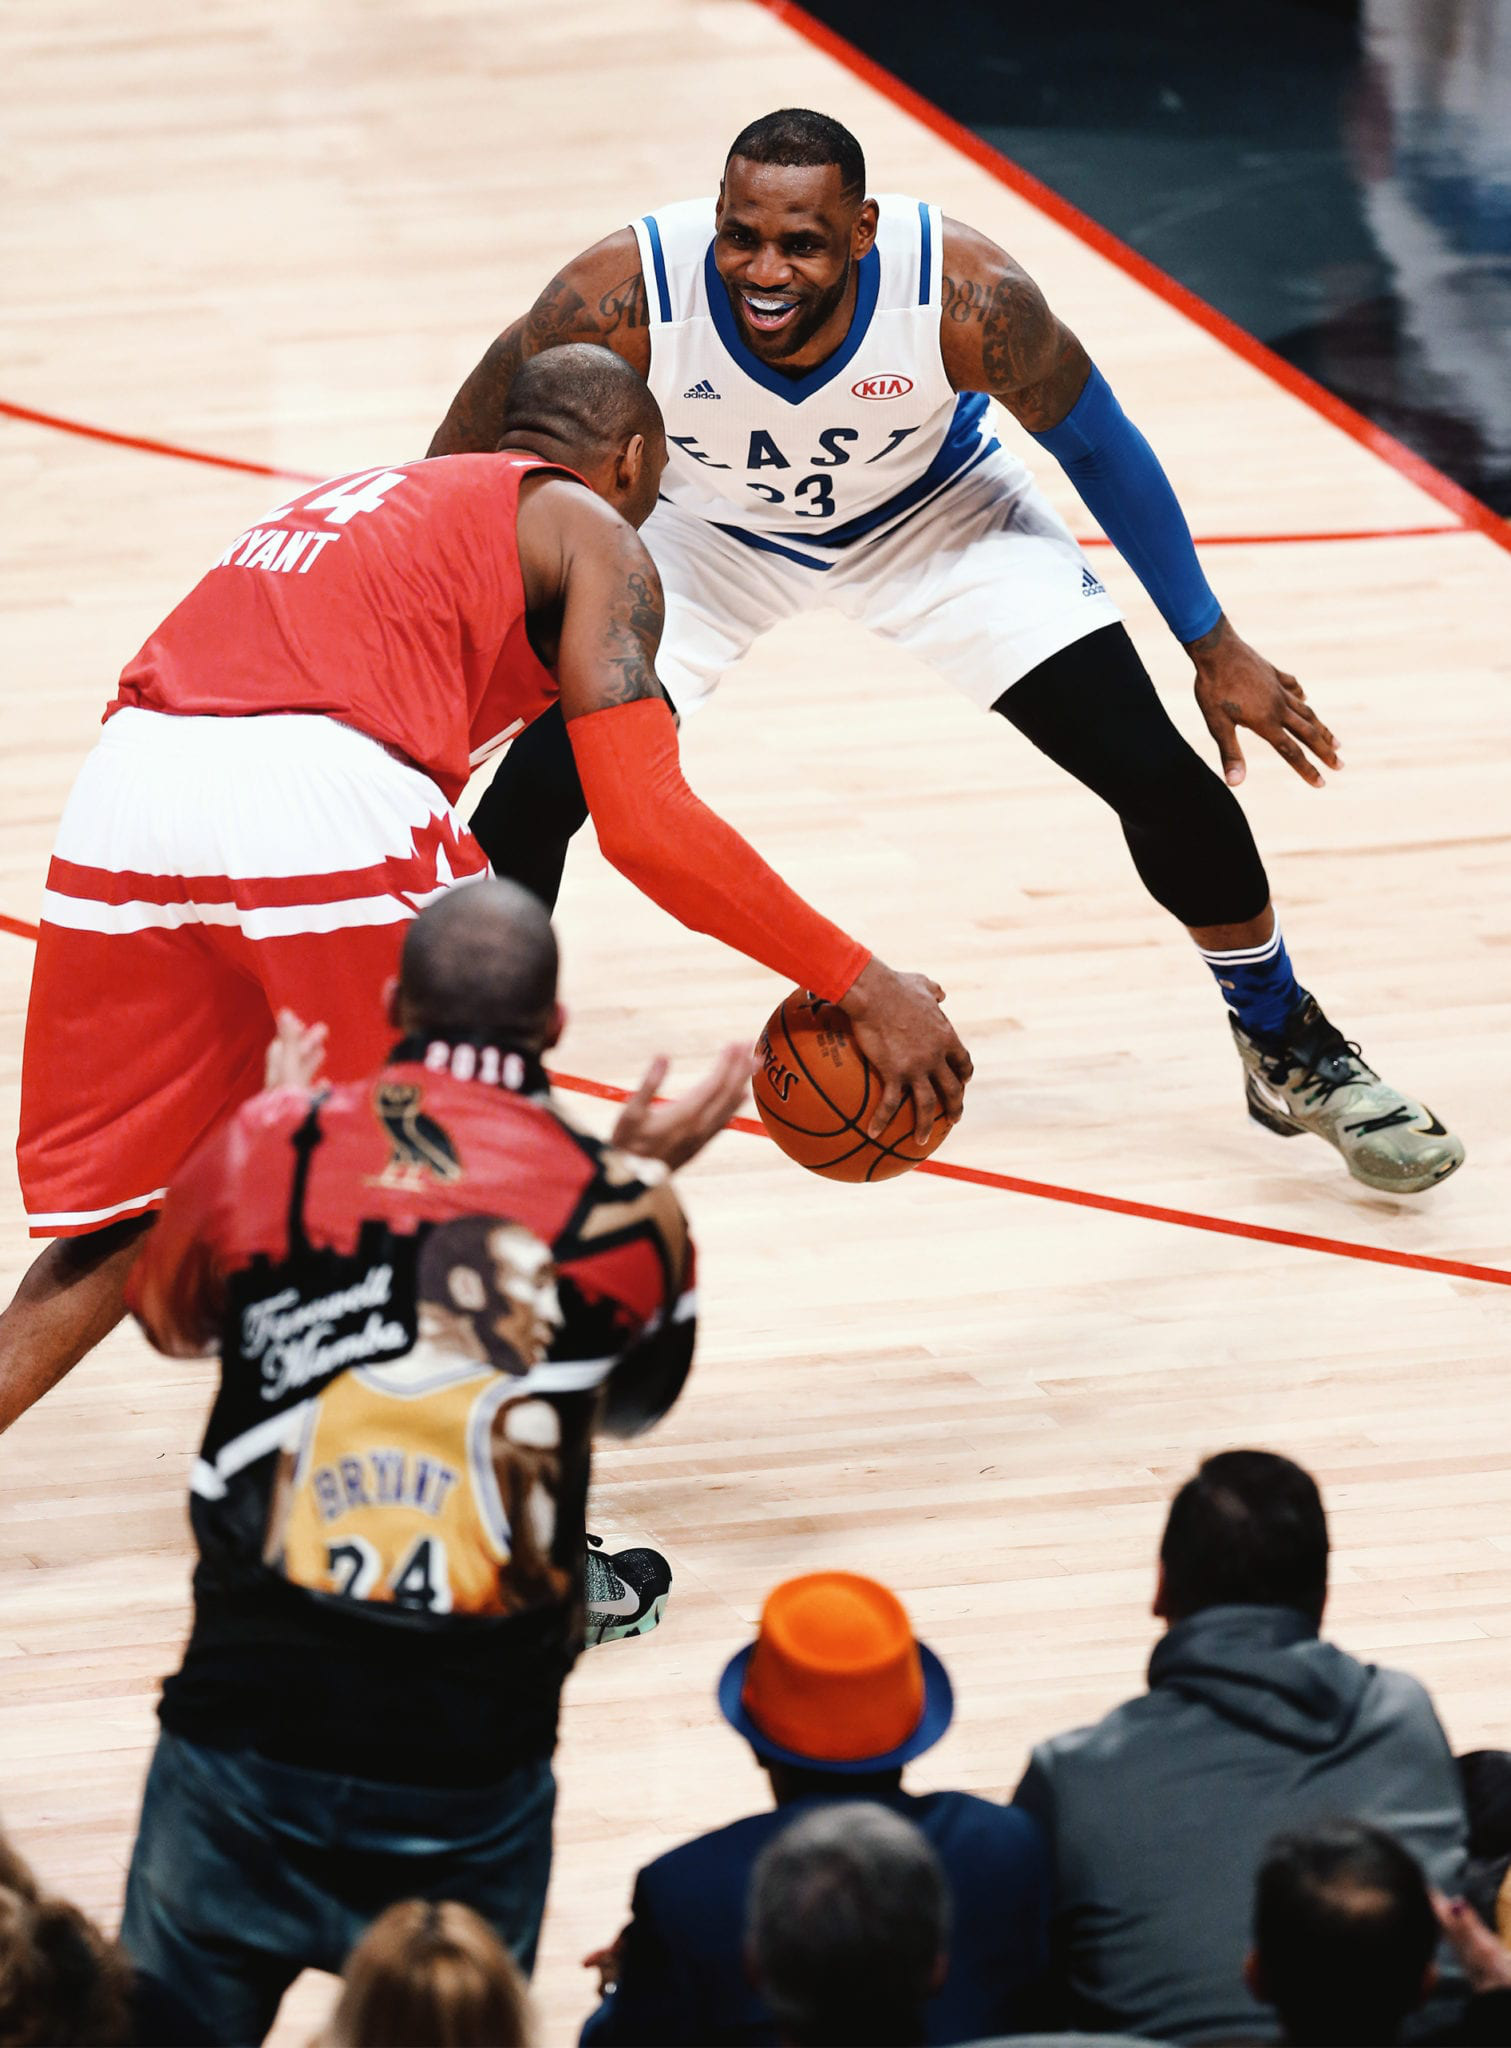 10 khoảnh khắc đắt giá ở giải bóng rổ hấp dẫn nhất thế giới trong thập kỷ vừa qua: Kobe Bryant thăng hoa lần cuối, Stephen Curry bó gối nhìn triều đại Golden State Warriors sụp đổ - Ảnh 4.